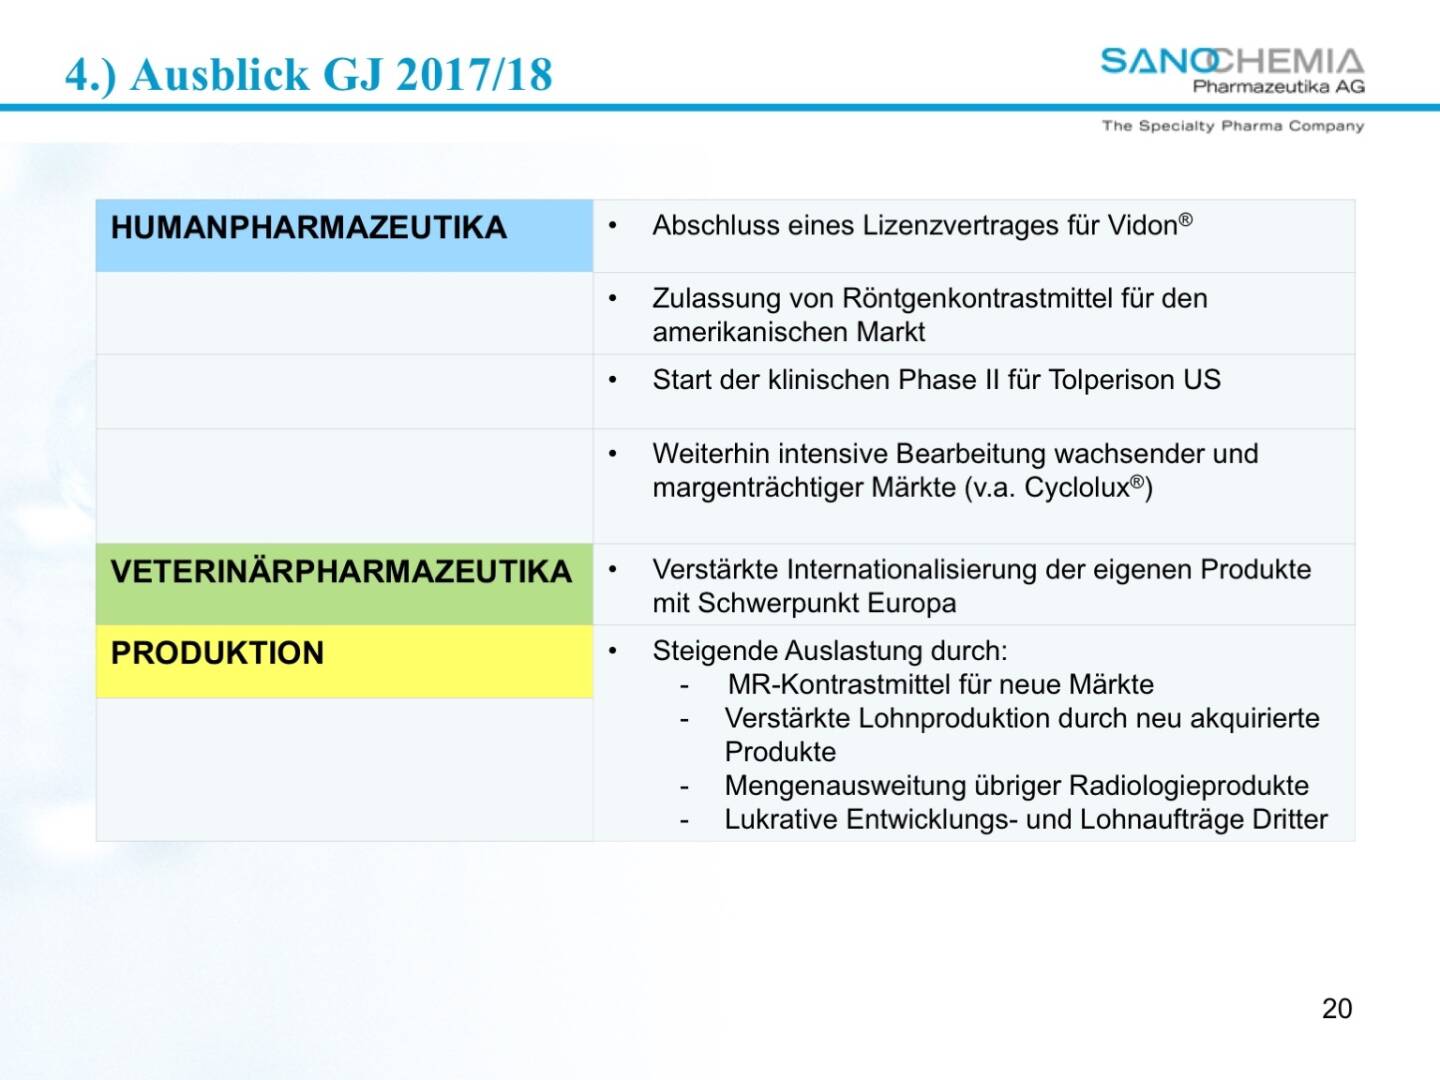 Präsentation Sanochemia - Ausblick 2017/18